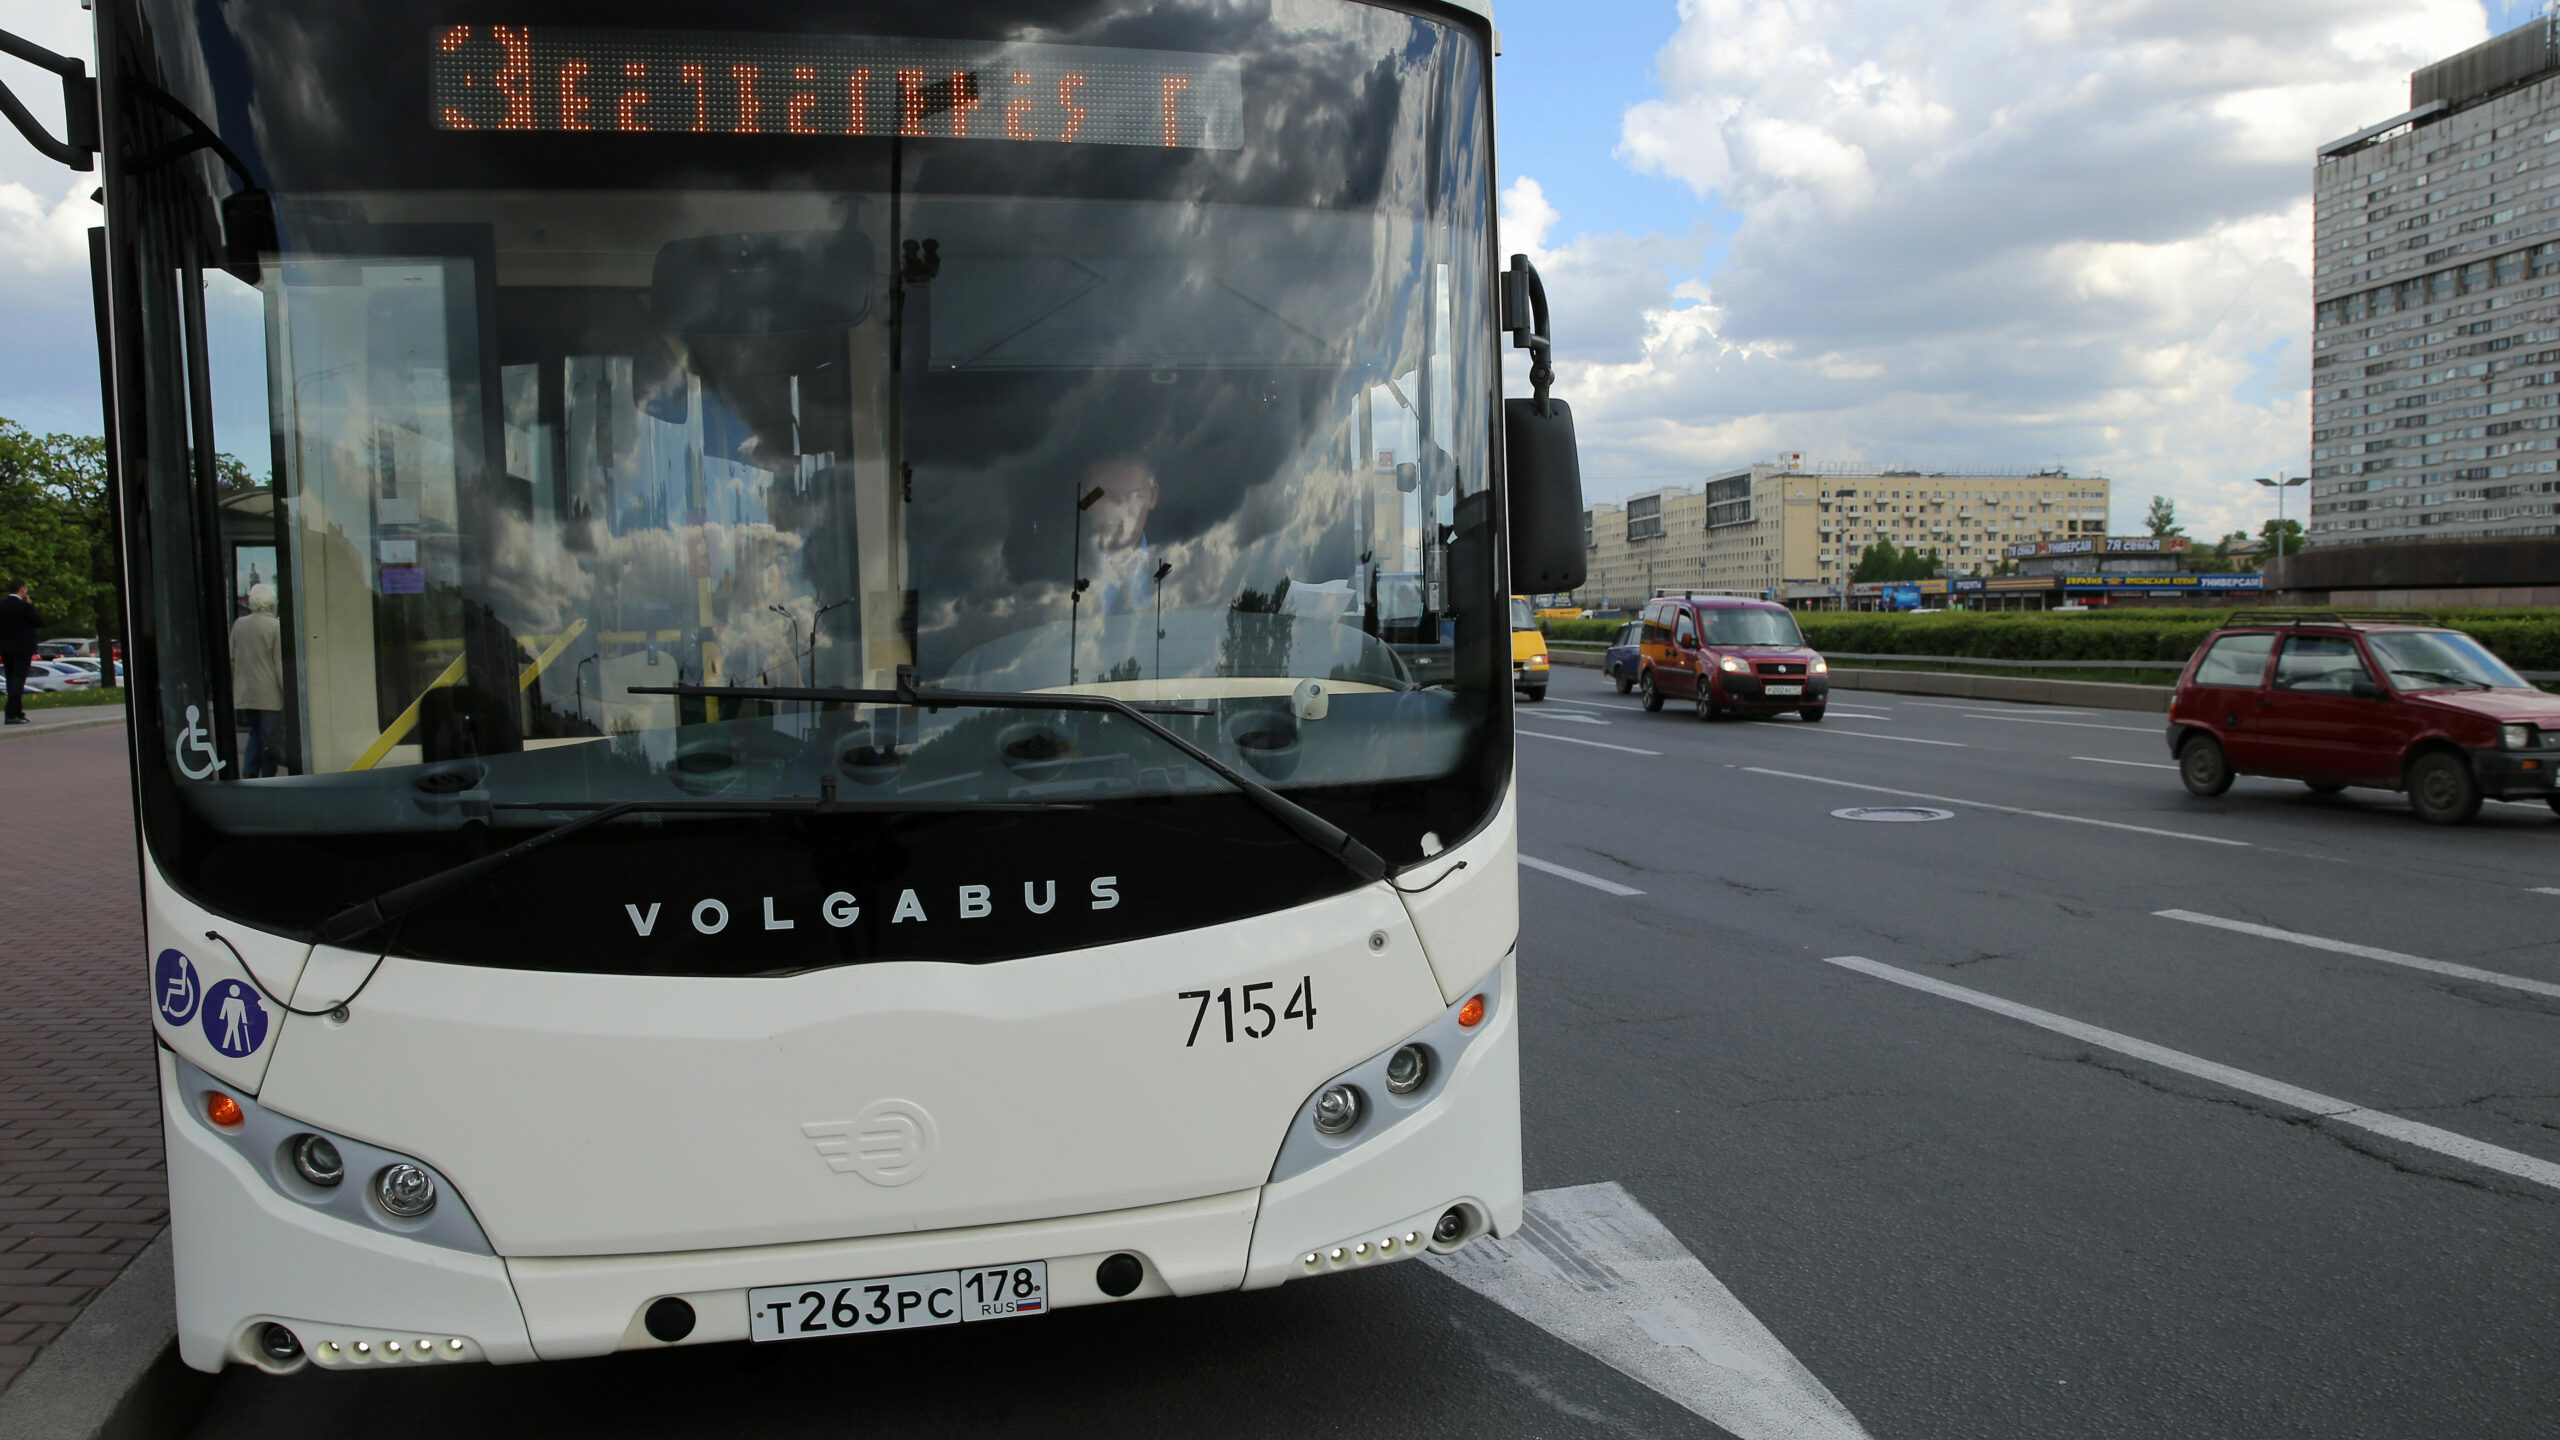 Как комитет по транспорту реагирует на нарушения водителей автобусов в Петербурге